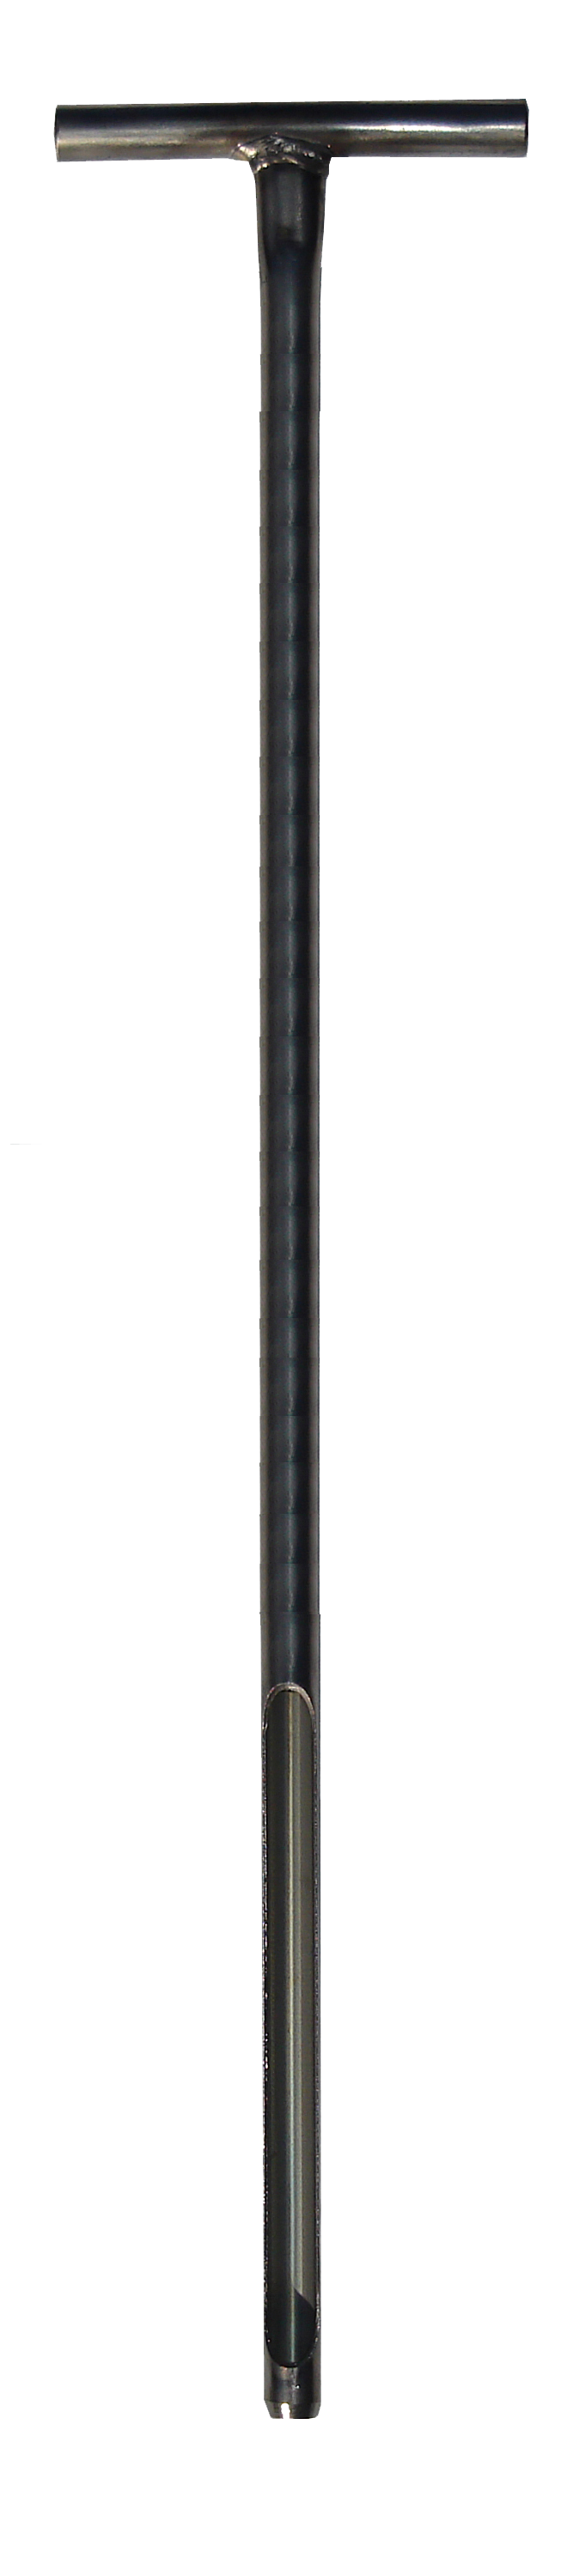 Turf-Tec Tall Pocket Tubular Soil Sampler Stainless Steel - 1/2 inch Diameter